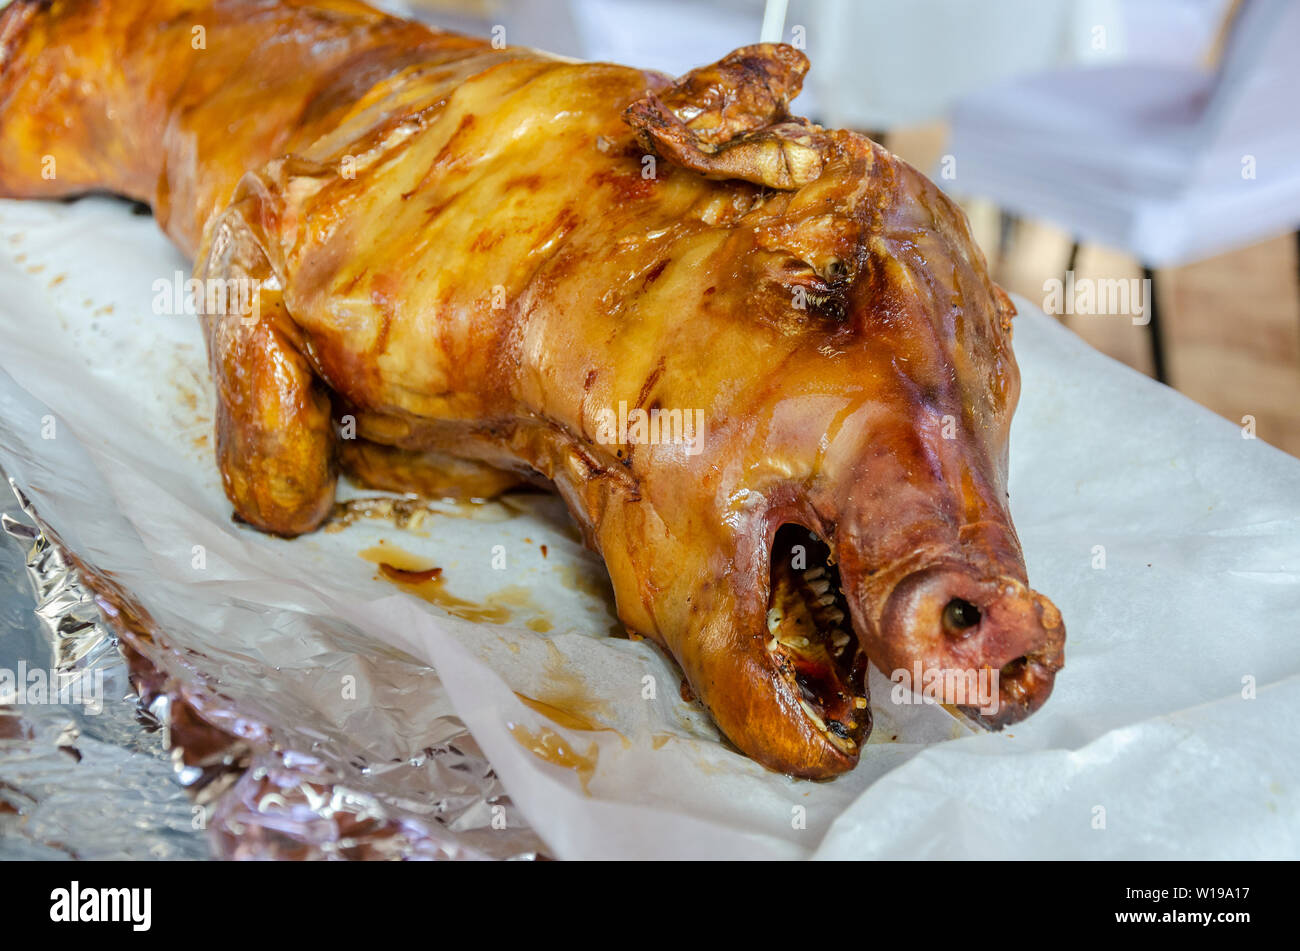 Ein Schwein braten Schwein oder lechon ist traditionell Philippinischen Feiern und besondere Veranstaltungen durchtrennt, Stockfoto